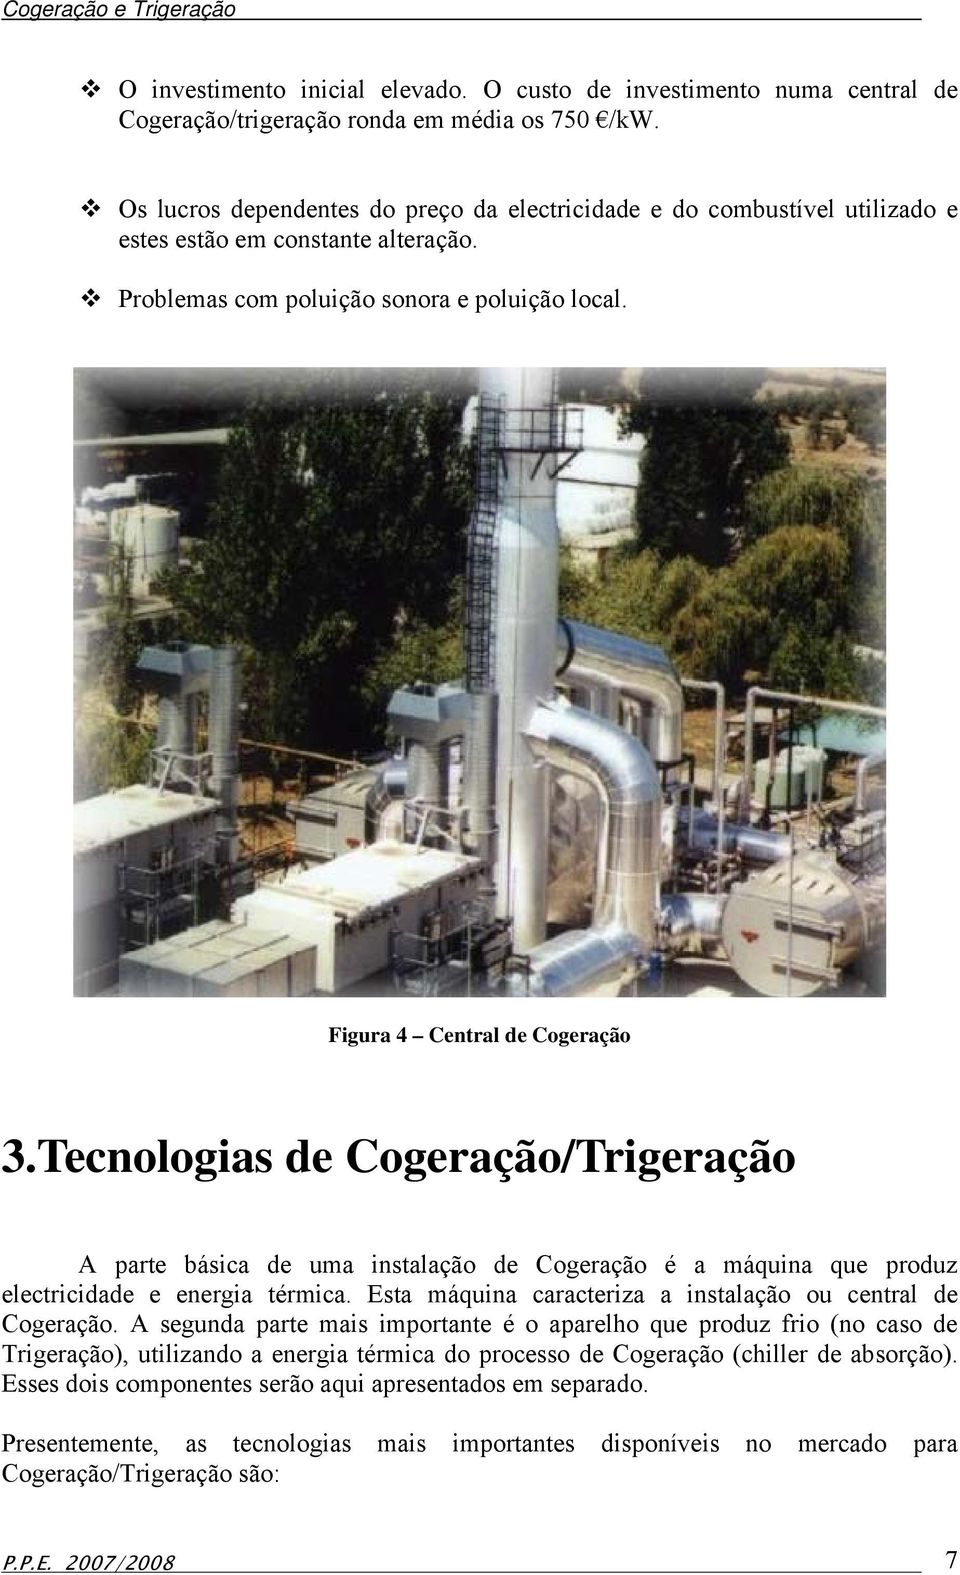 Tecnologias de Cogeração/Trigeração A parte básica de uma instalação de Cogeração é a máquina que produz electricidade e energia térmica. Esta máquina caracteriza a instalação ou central de Cogeração.